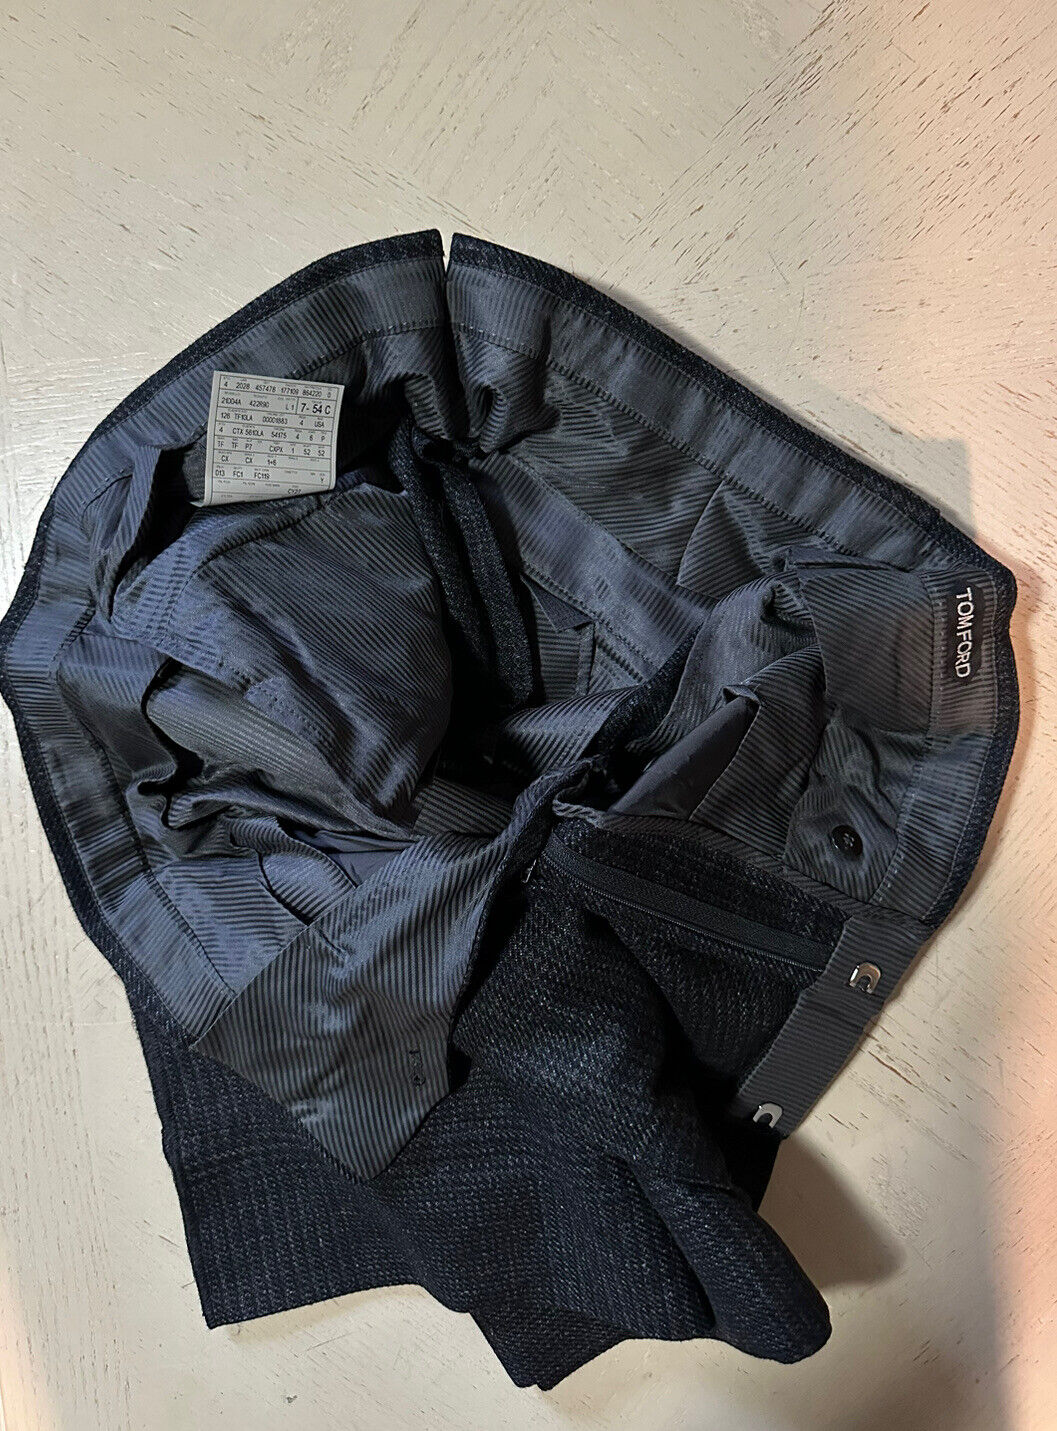 Новый мужской двубортный костюм TOM FORD за 6530 долларов США, темно-серый DK, 43 US/54 Eu Switz.